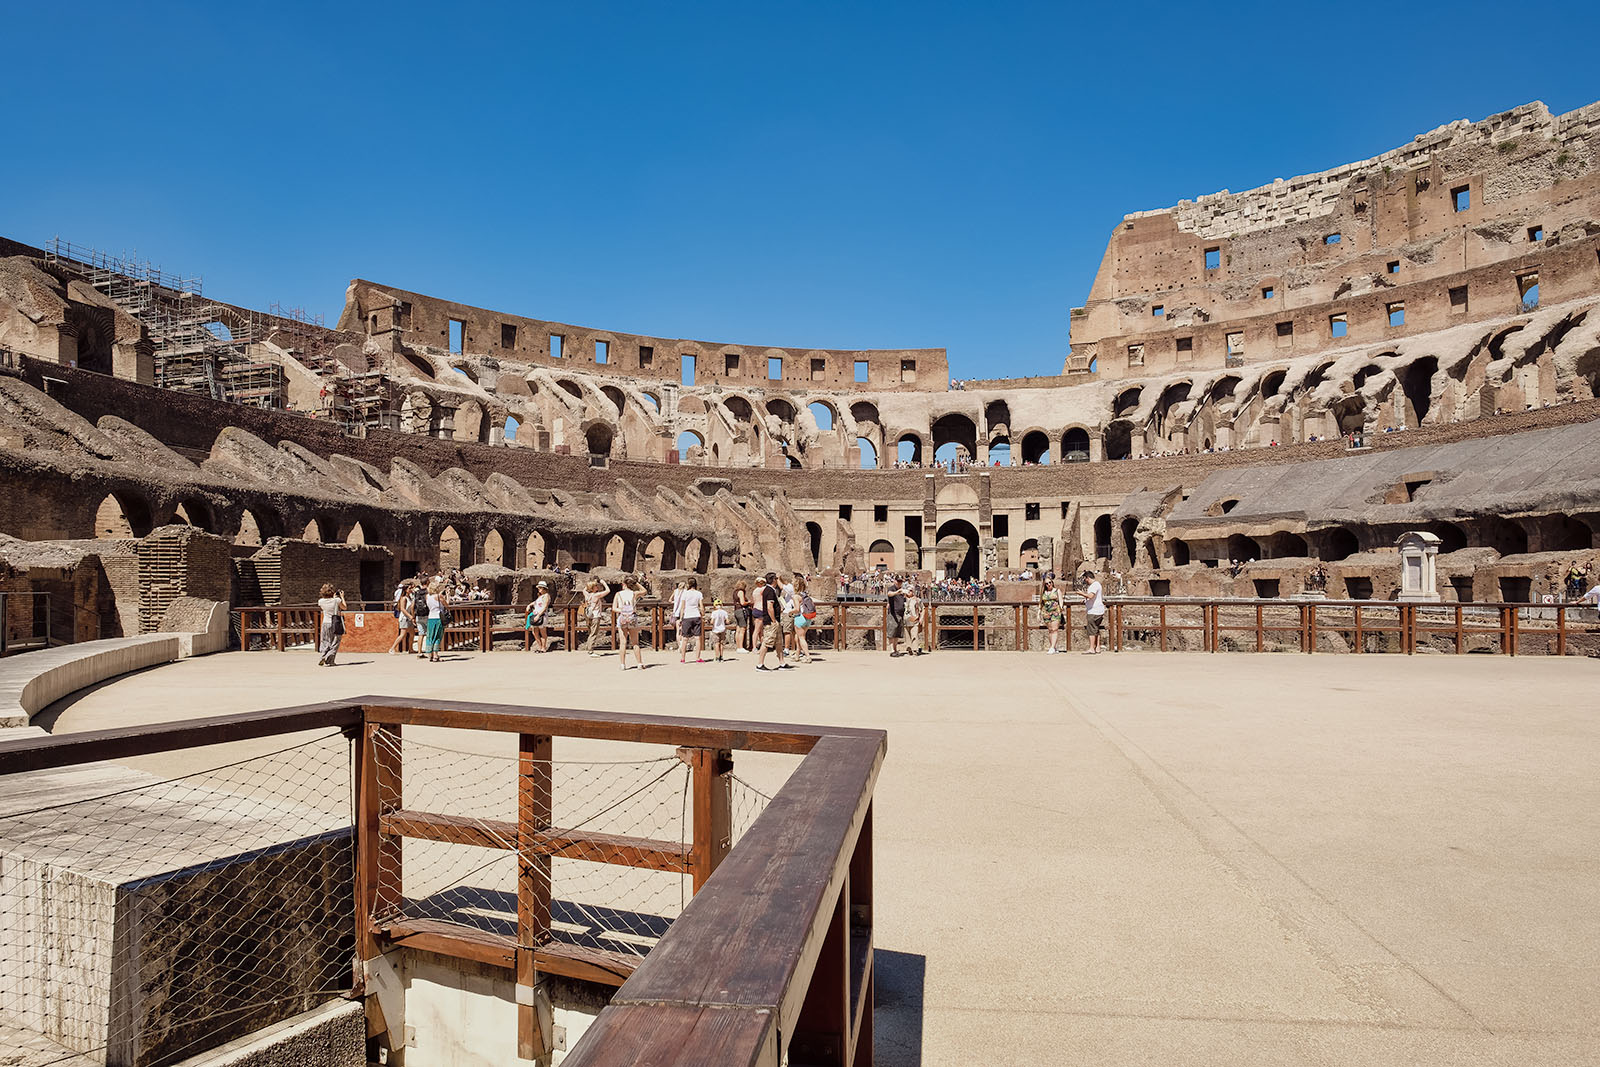 Arenagulvet hvor kampene fant sted i Colosseum